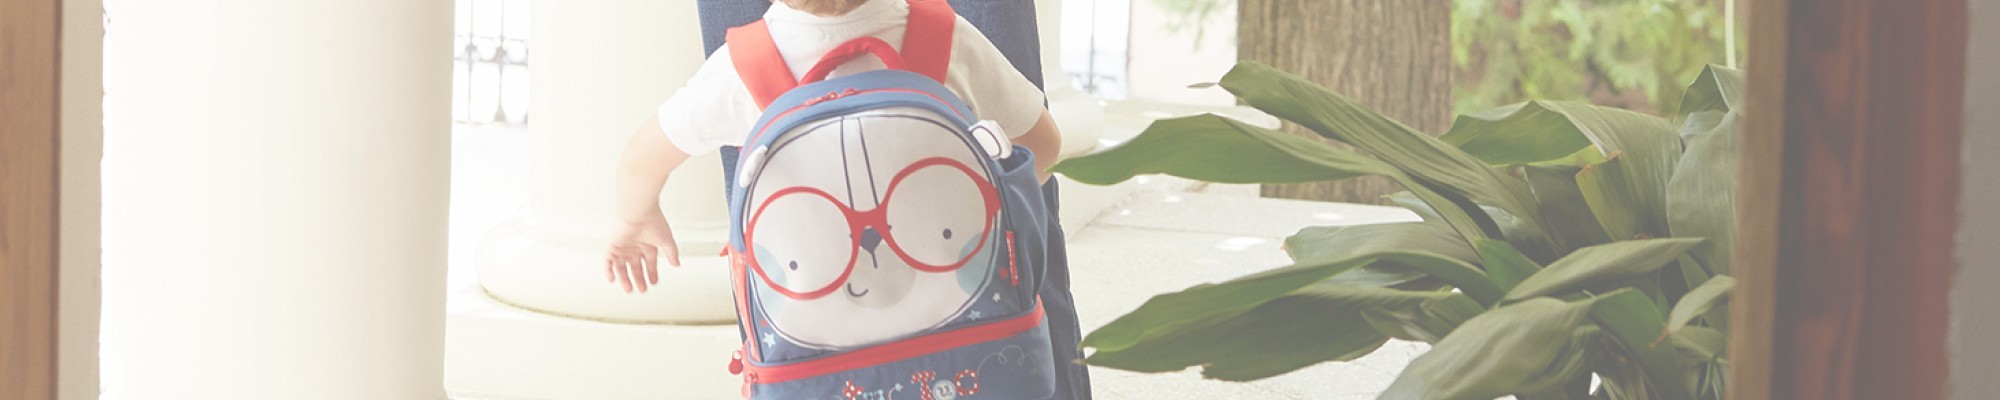 Nursery backpack